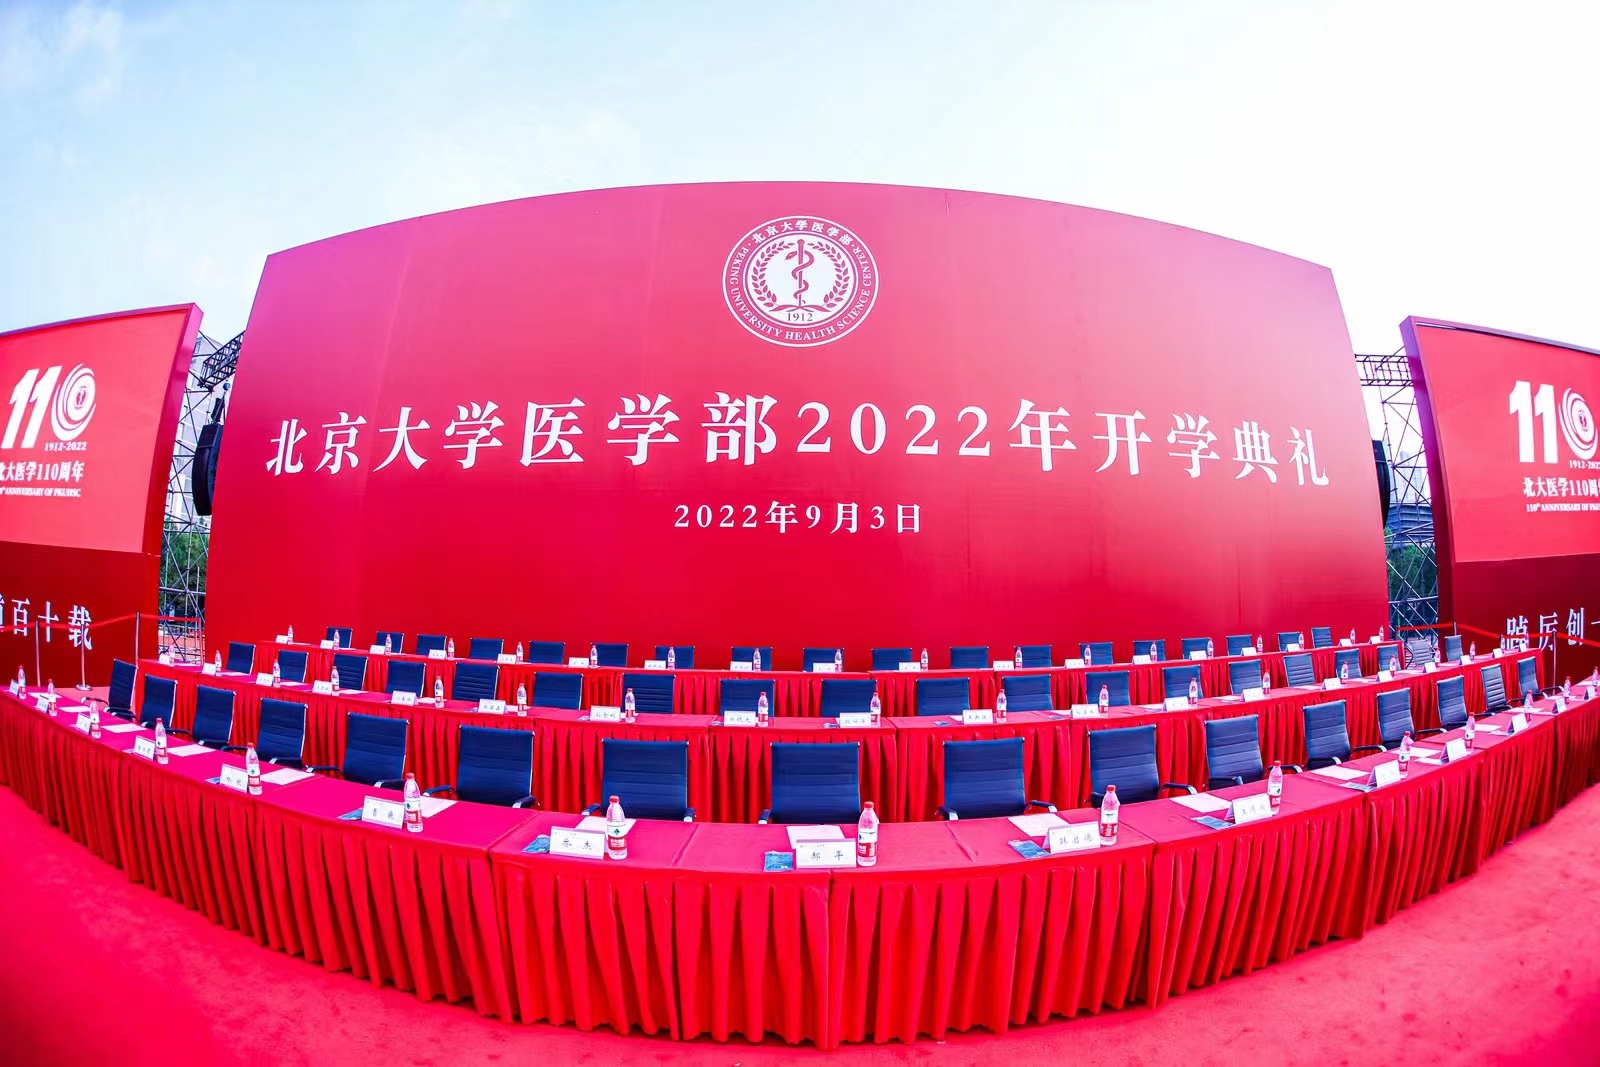 北京大學醫學部2022年開學典禮拍攝策劃活動